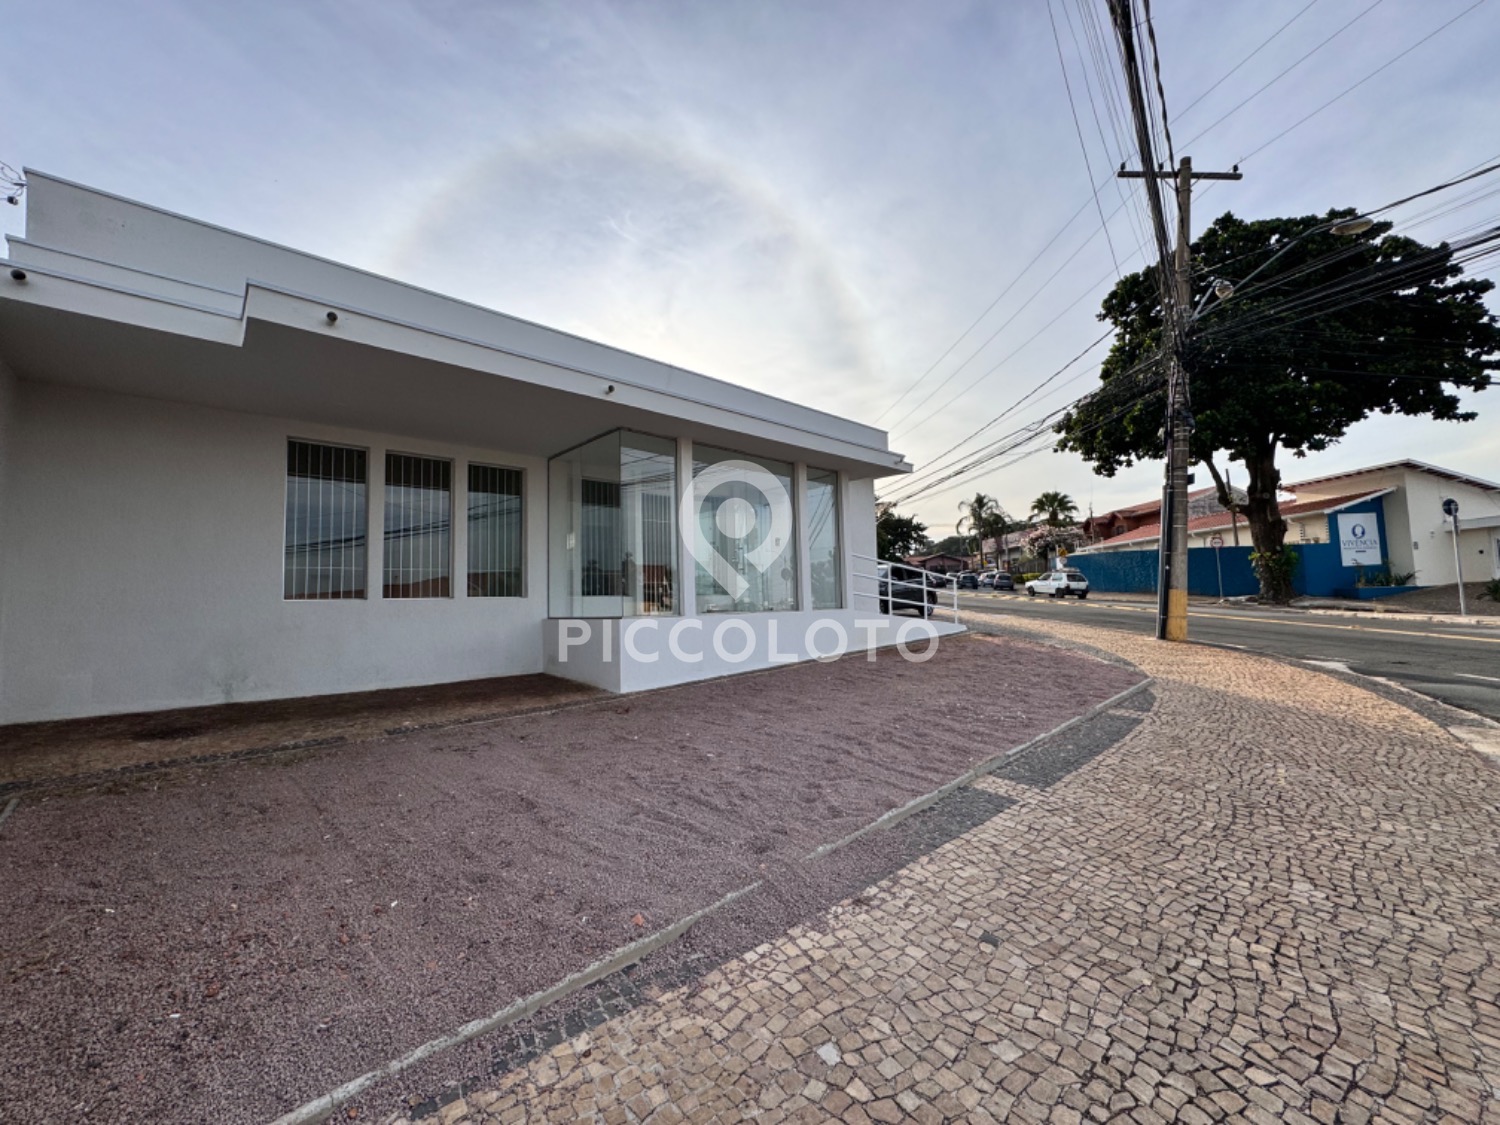 Piccoloto - Casa para alugar no Jardim Guanabara em Campinas